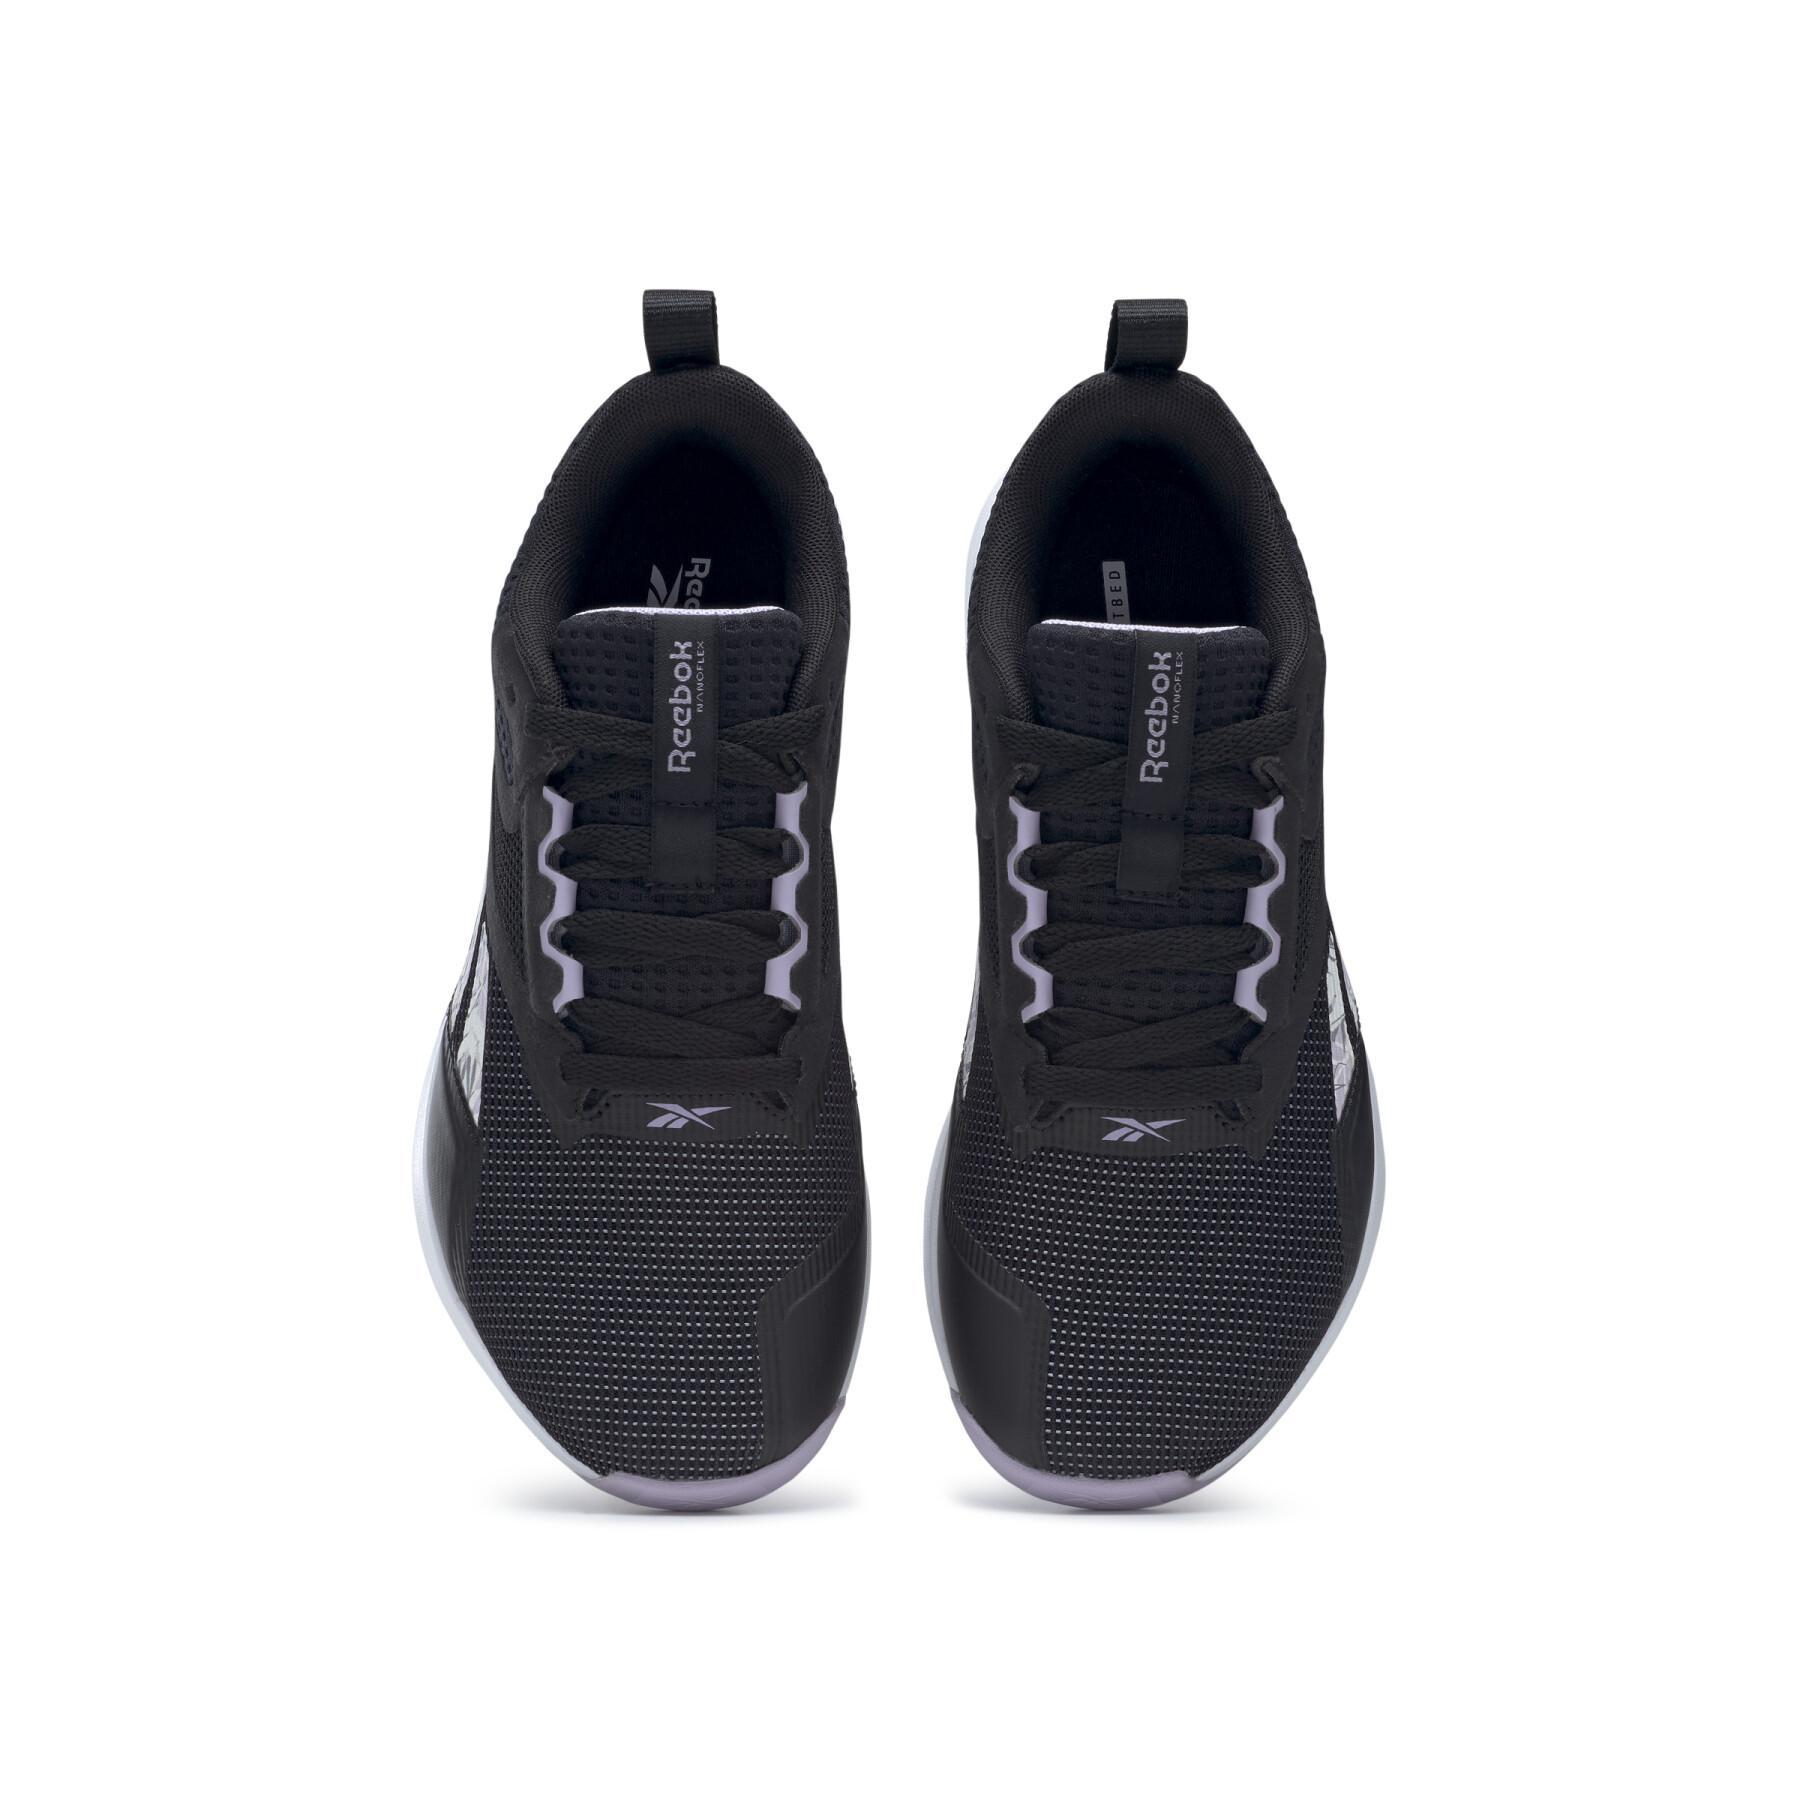 Chaussures de cross training femme Reebok Nanoflex Tr V2